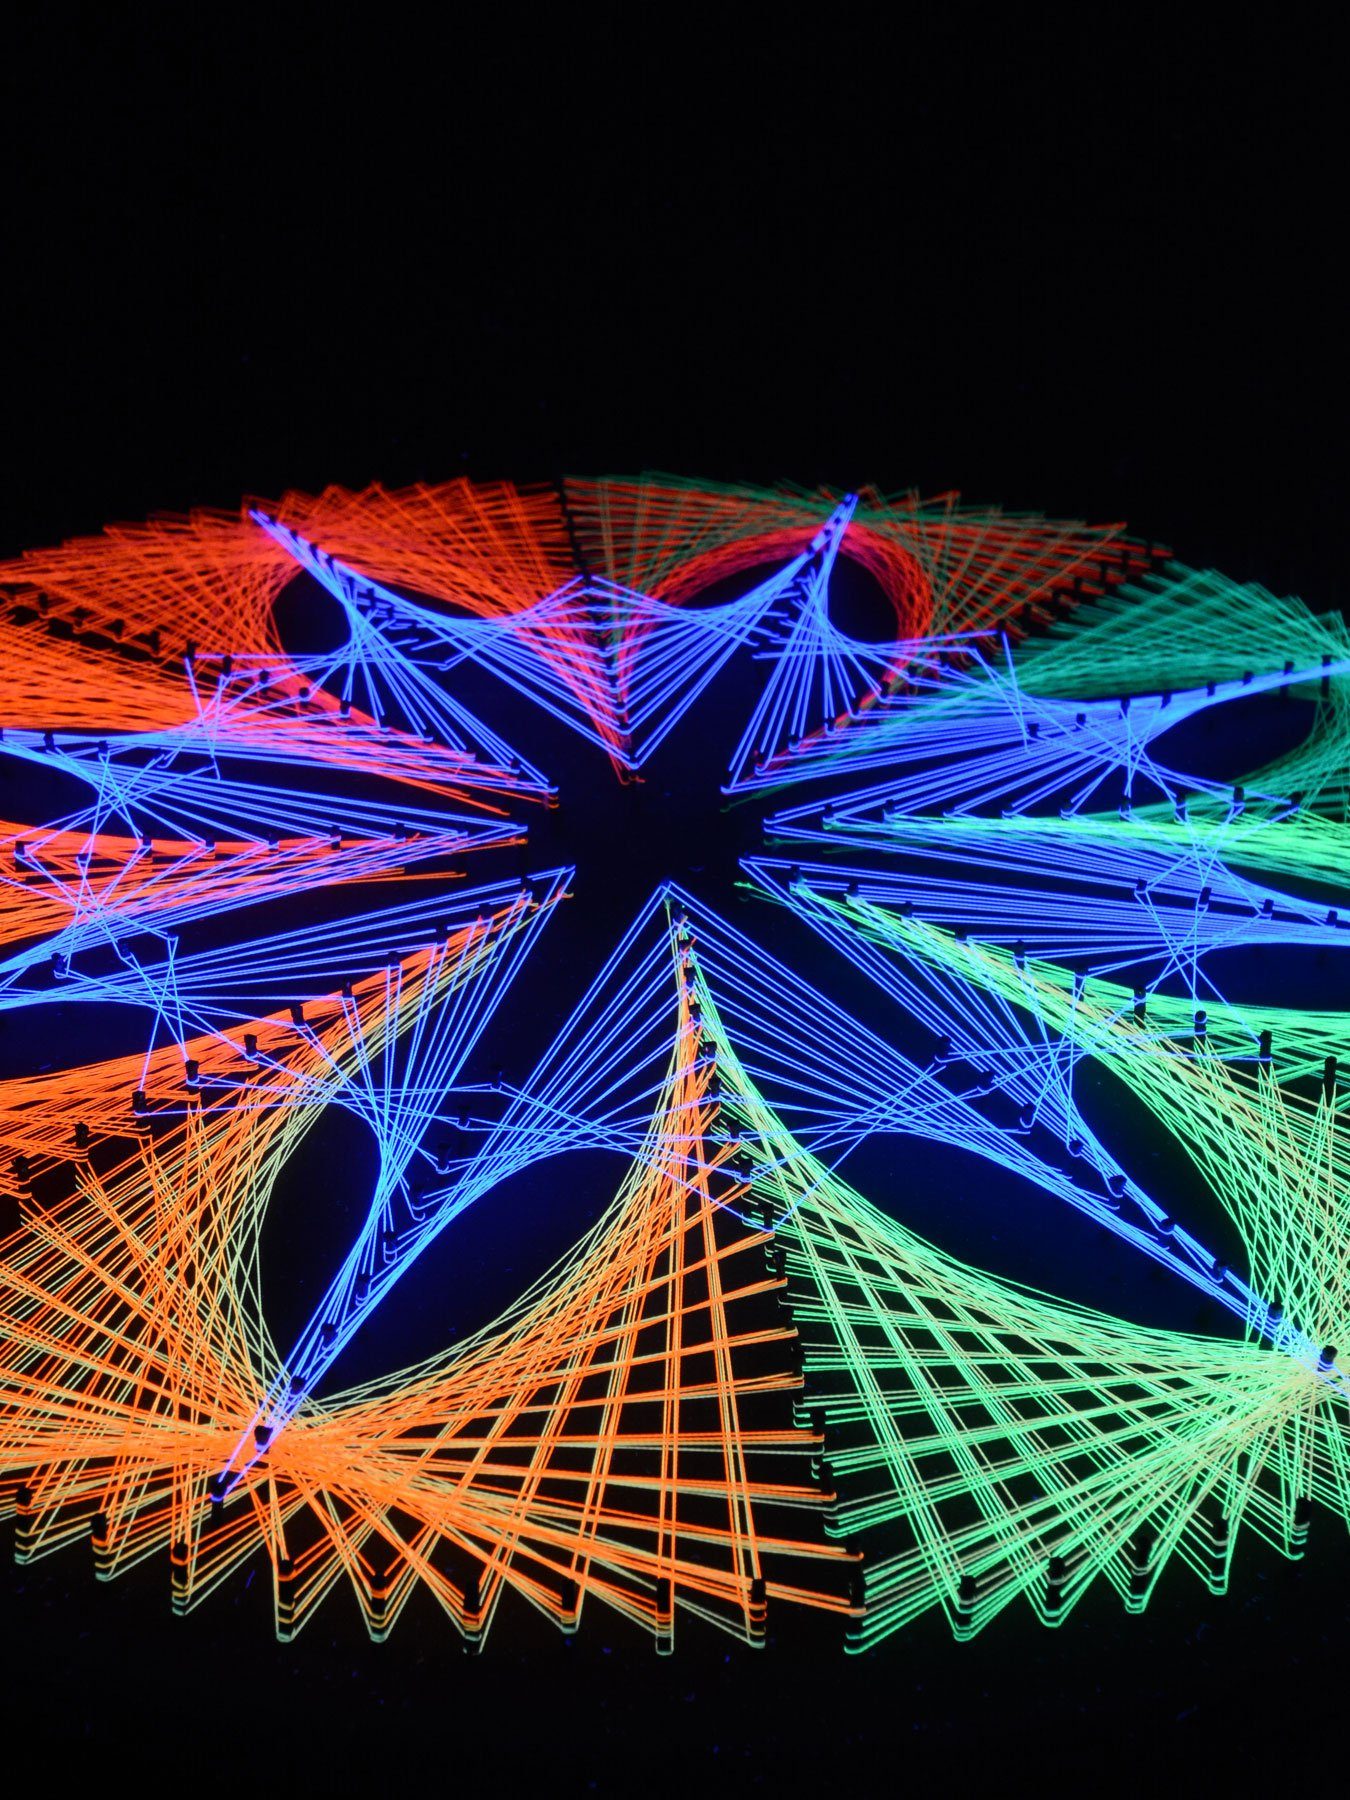 StringArt unter "Fluo 40cm, Schwarzlicht PSYWORK Fadendeko leuchtet Kreis Cornflower", Schwarzlicht Dekoobjekt 2D UV-aktiv,